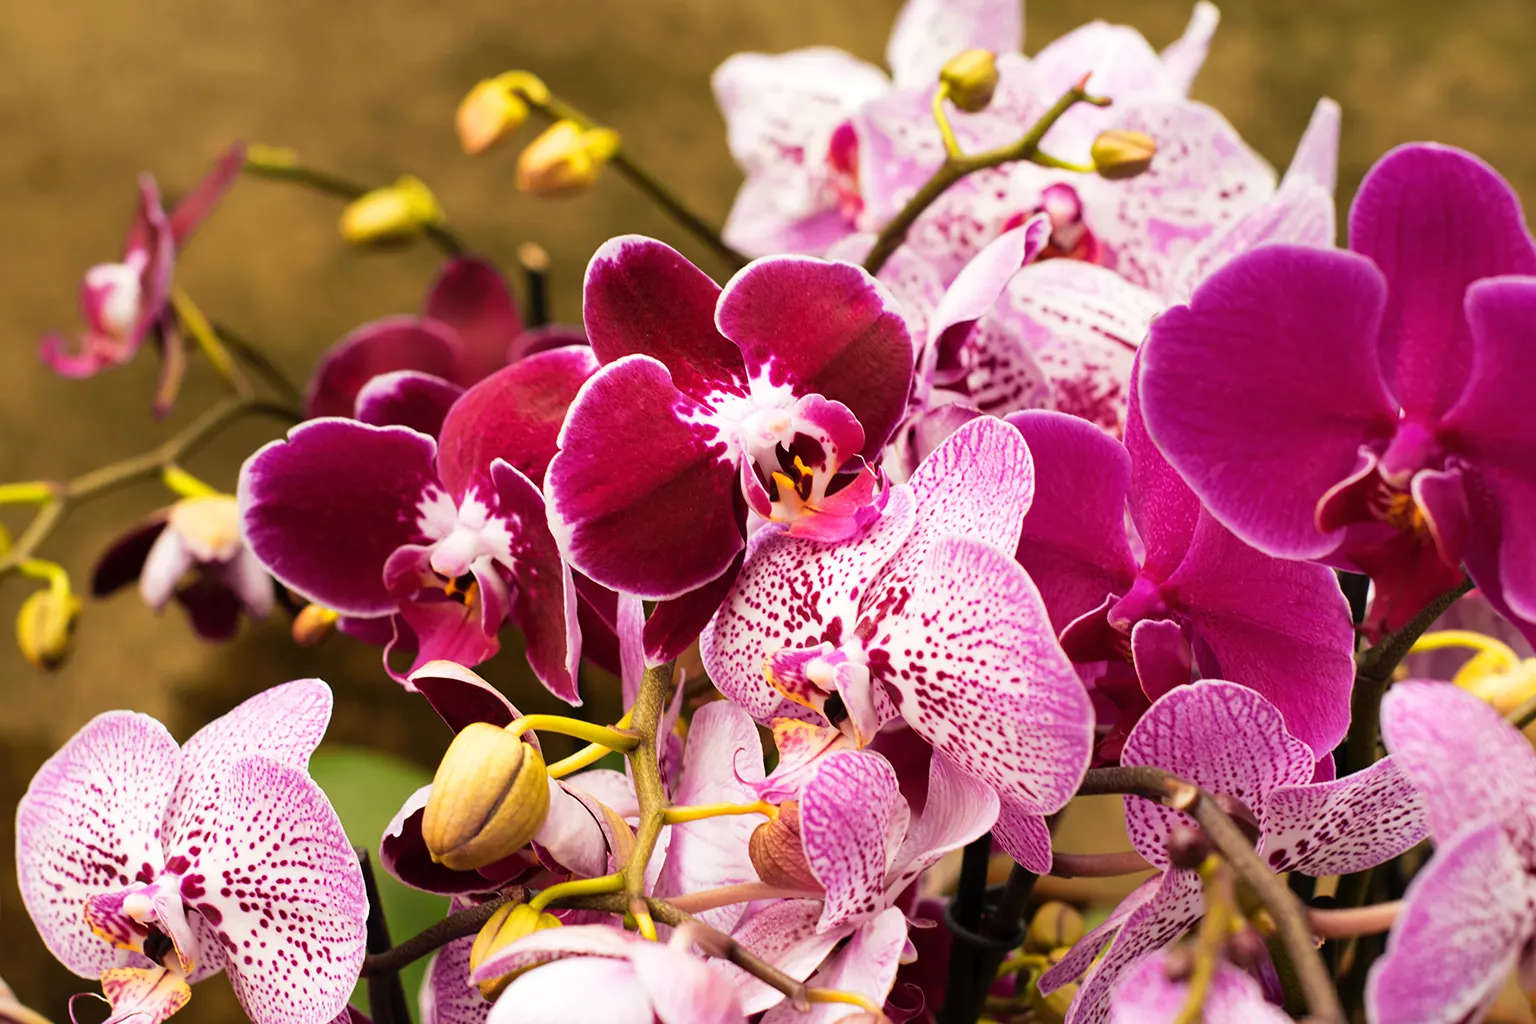 19. Wild Vanilla Orchid (Vanilla pompona)